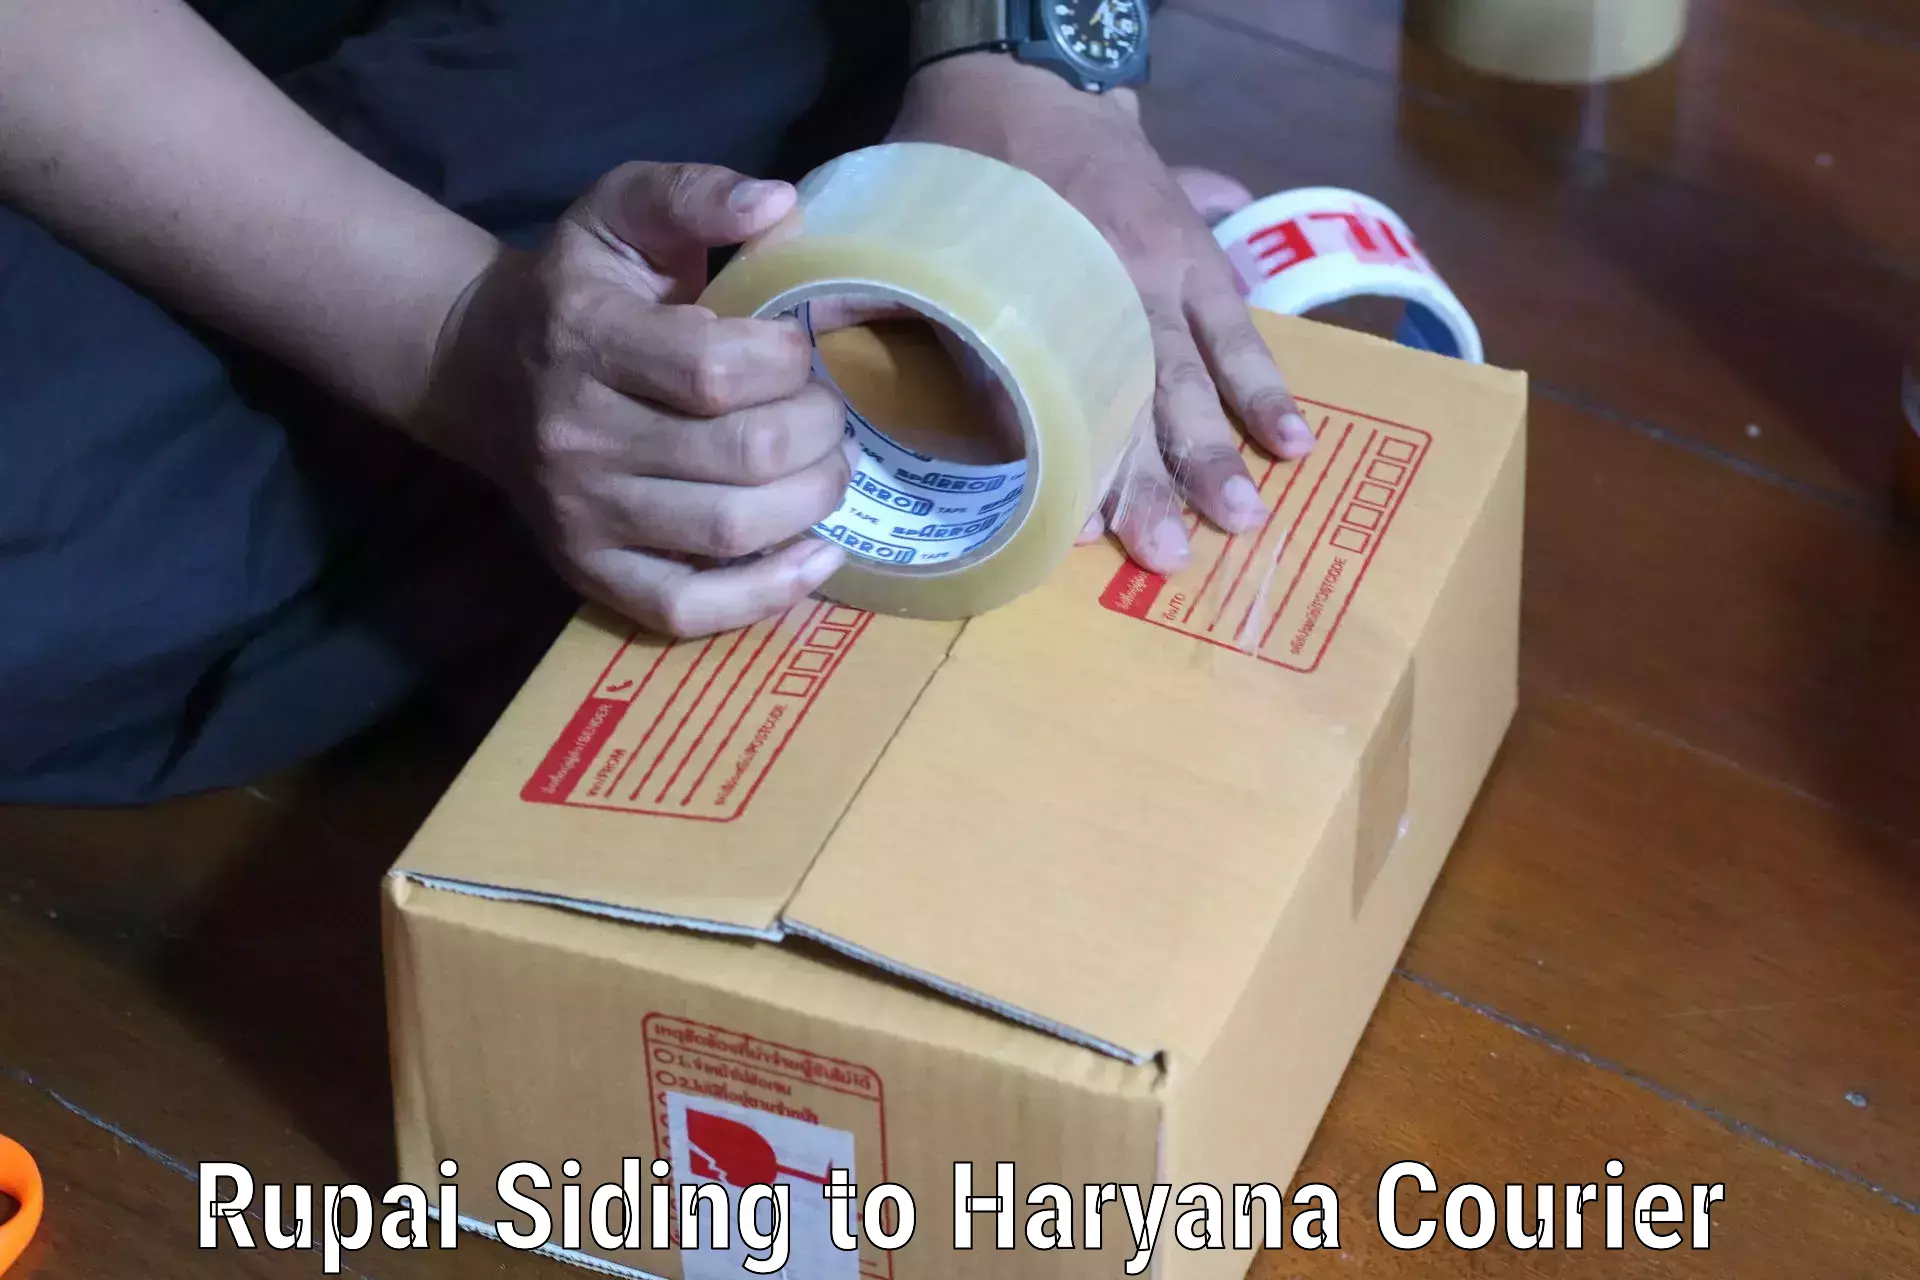 Bulk shipping discounts Rupai Siding to Chaudhary Charan Singh Haryana Agricultural University Hisar